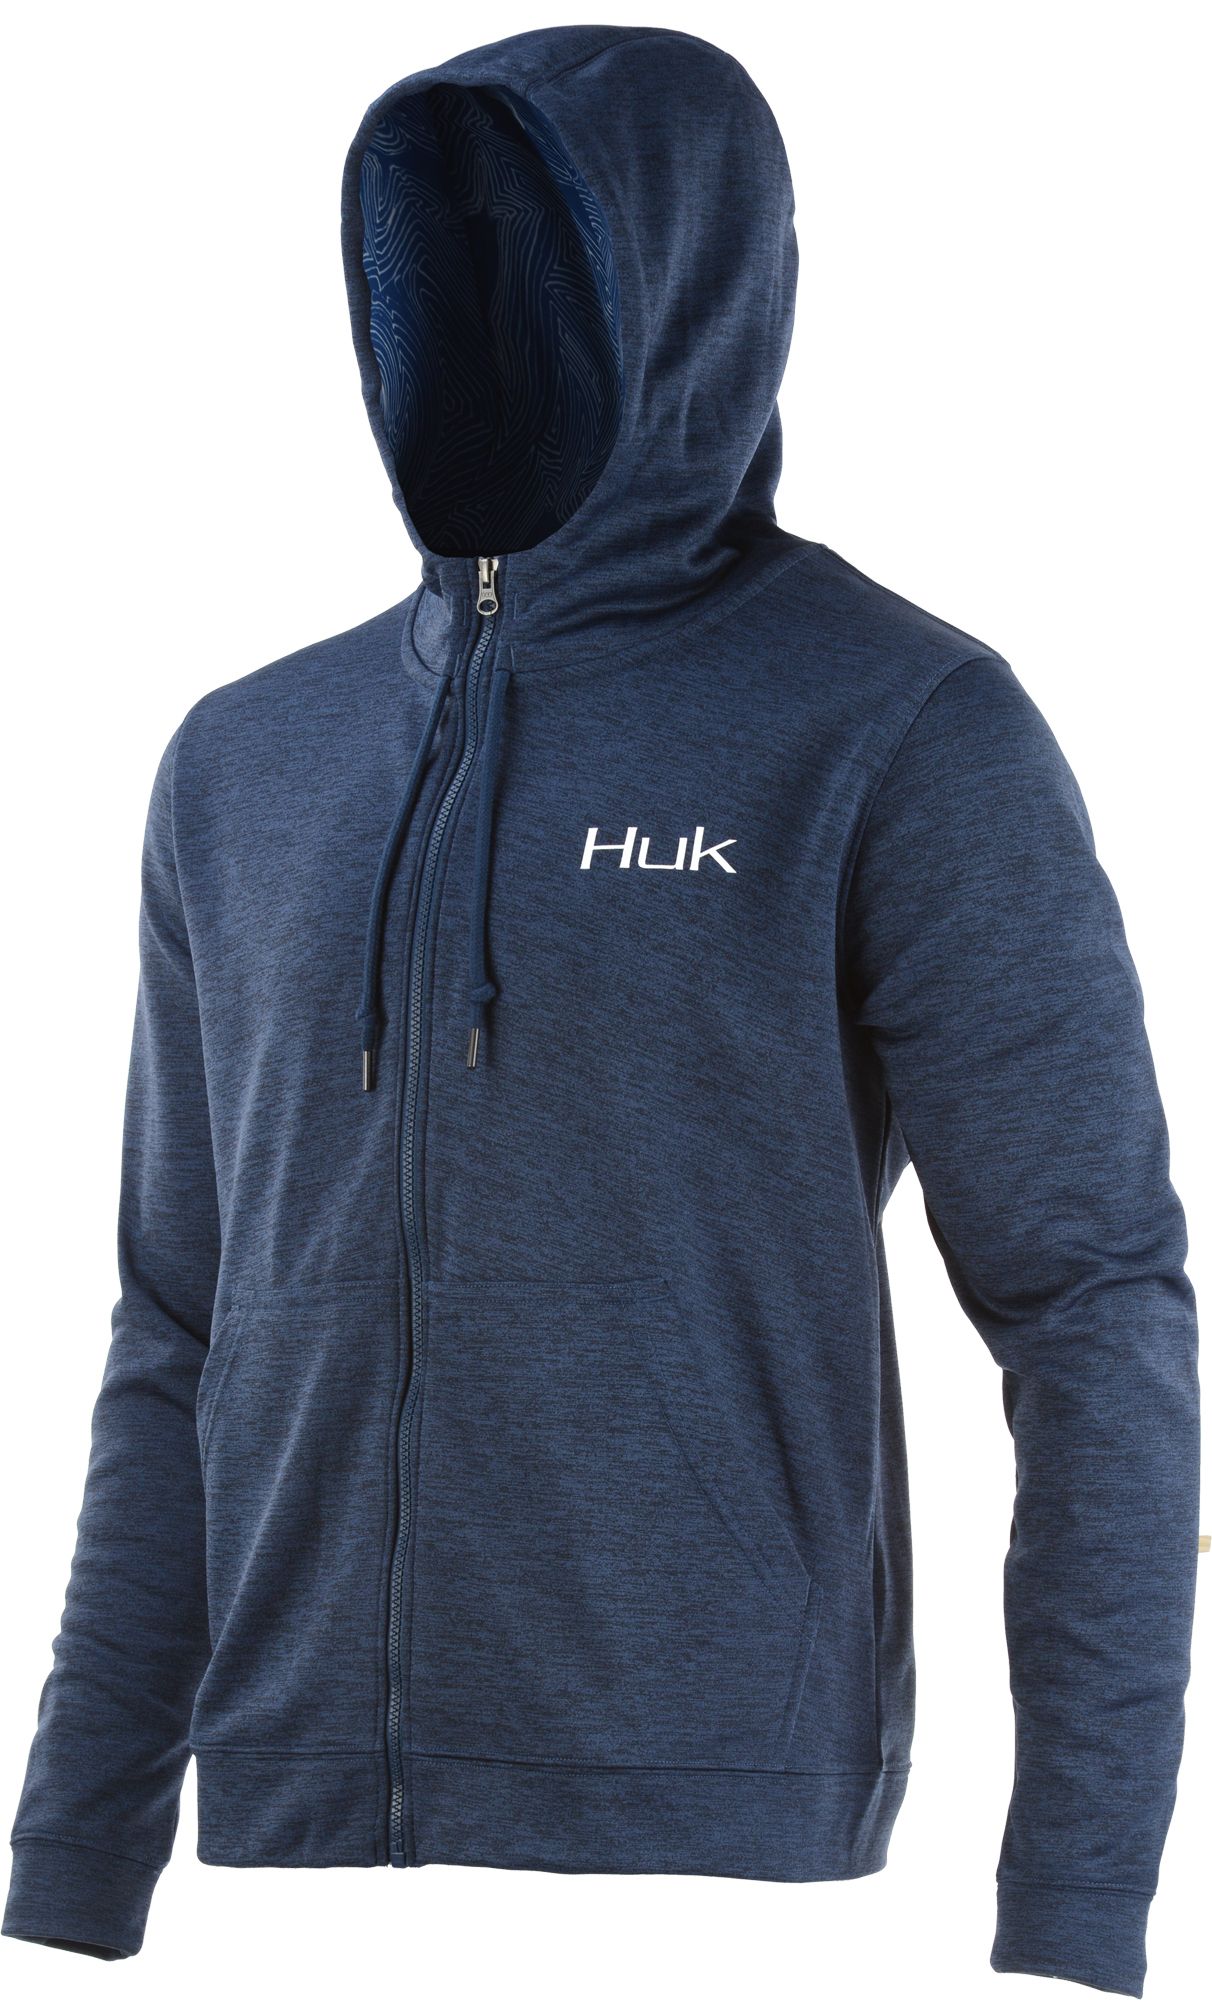 huk zip up hoodie